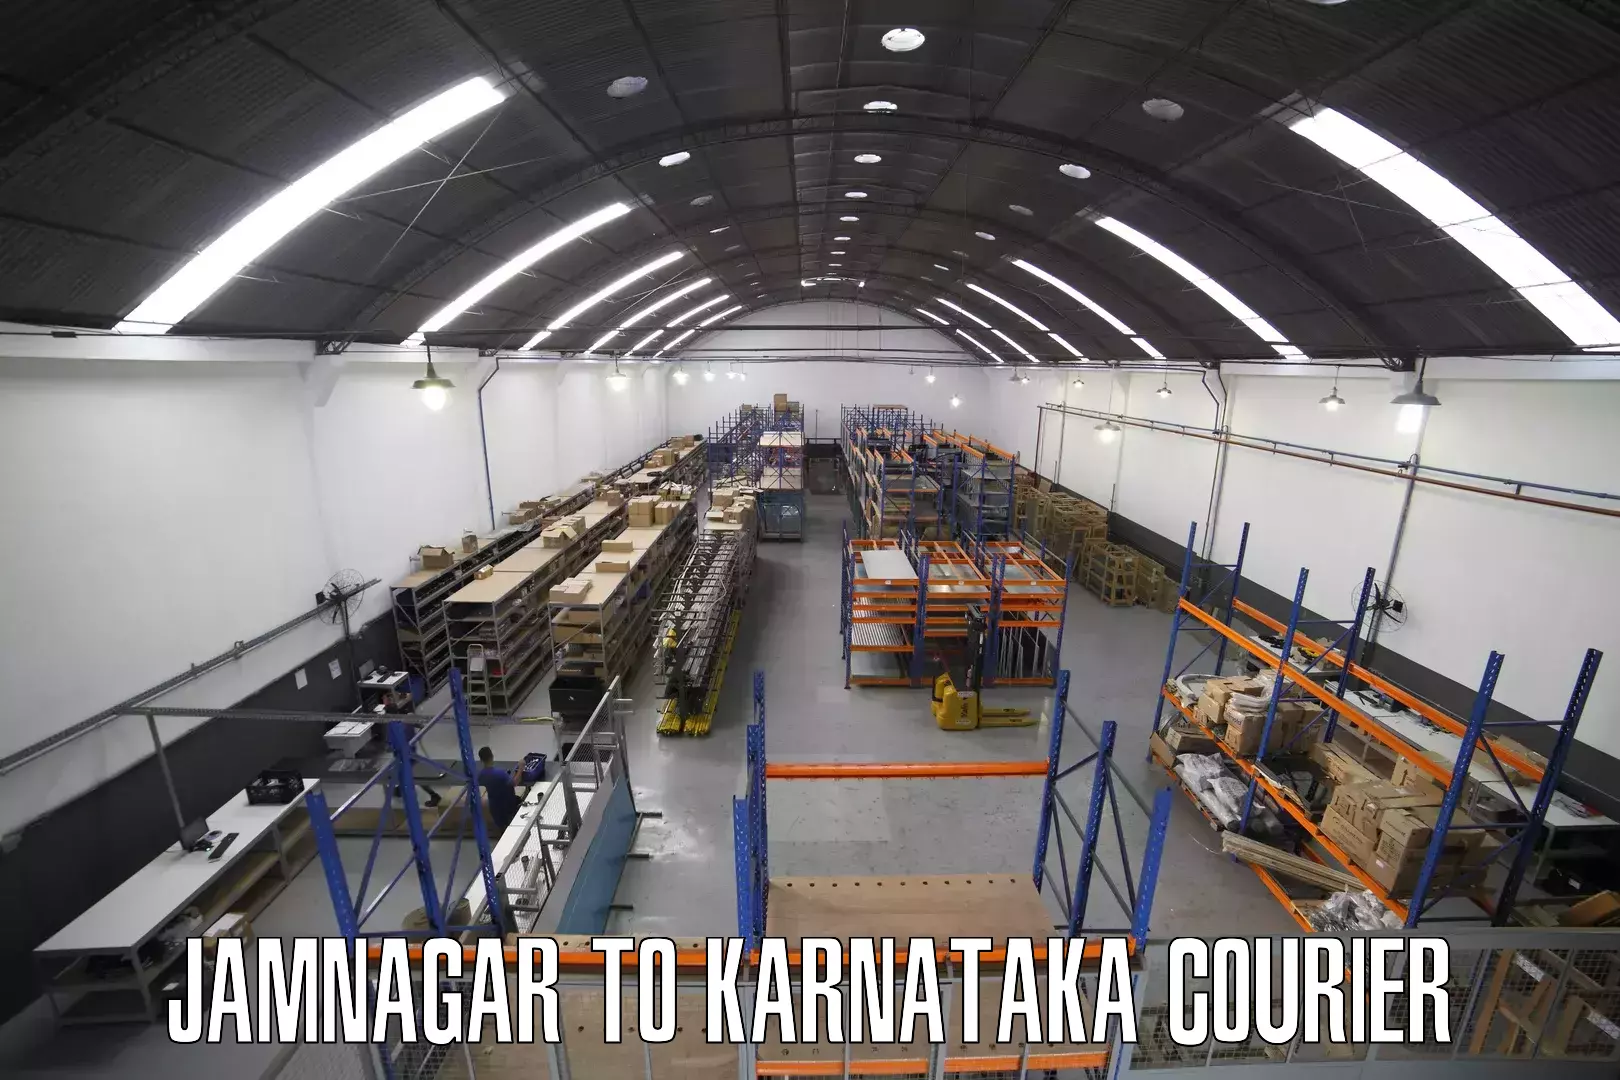 Courier service comparison Jamnagar to Mangalore Port